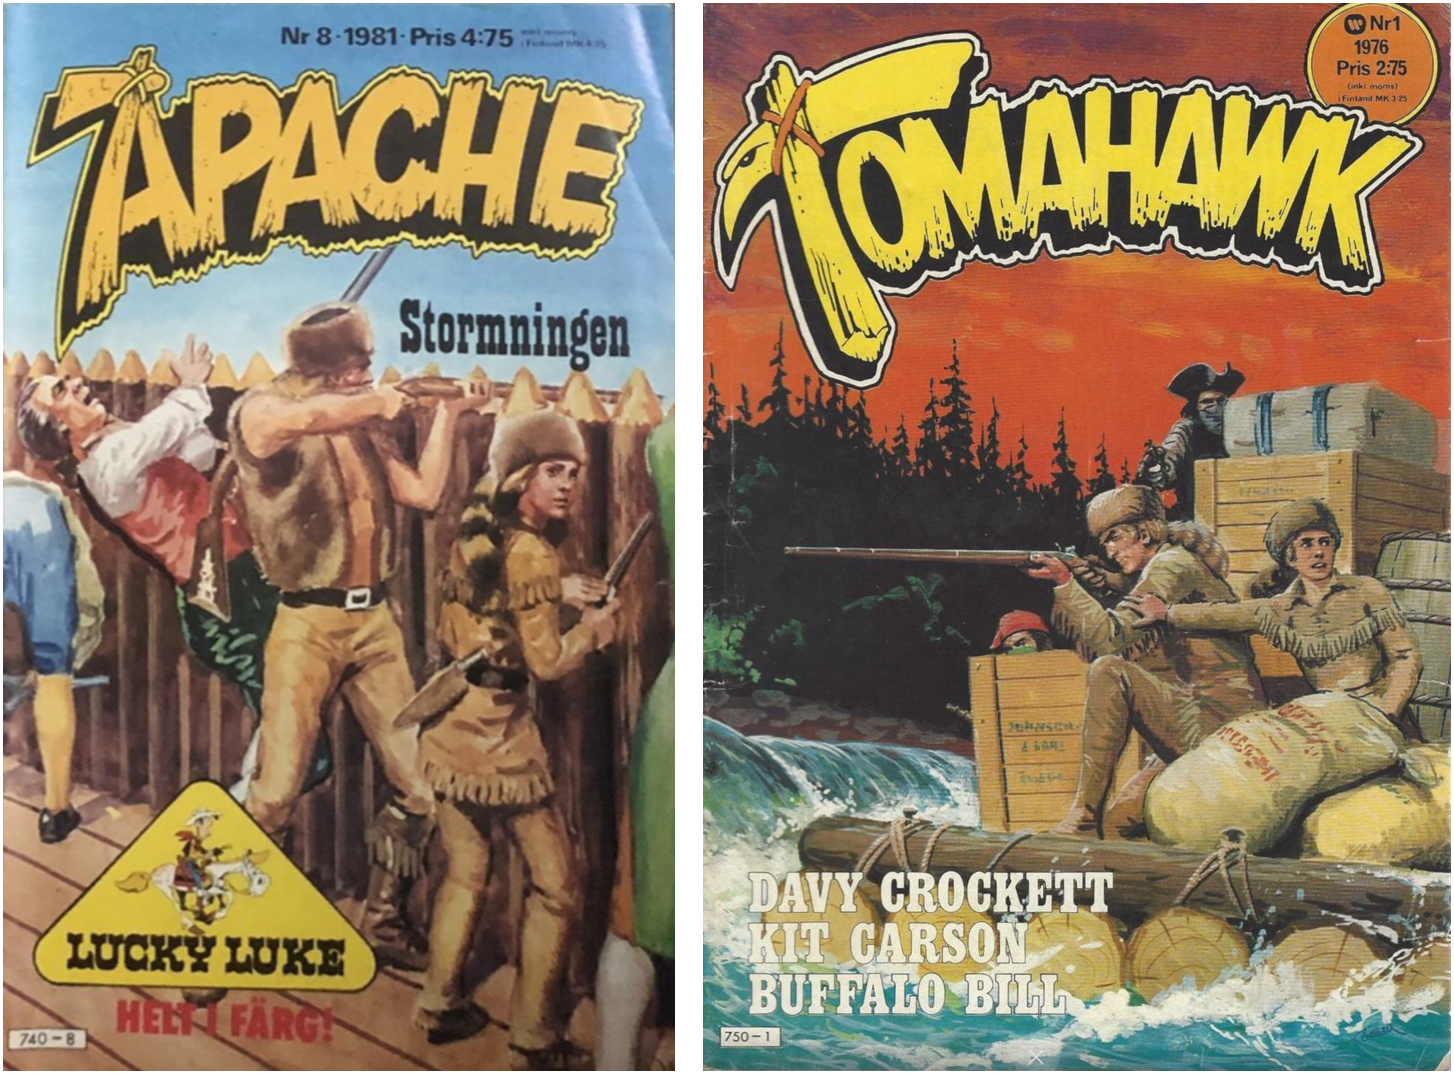 Davy Crockett publicerades också i Apache och Tomahawk